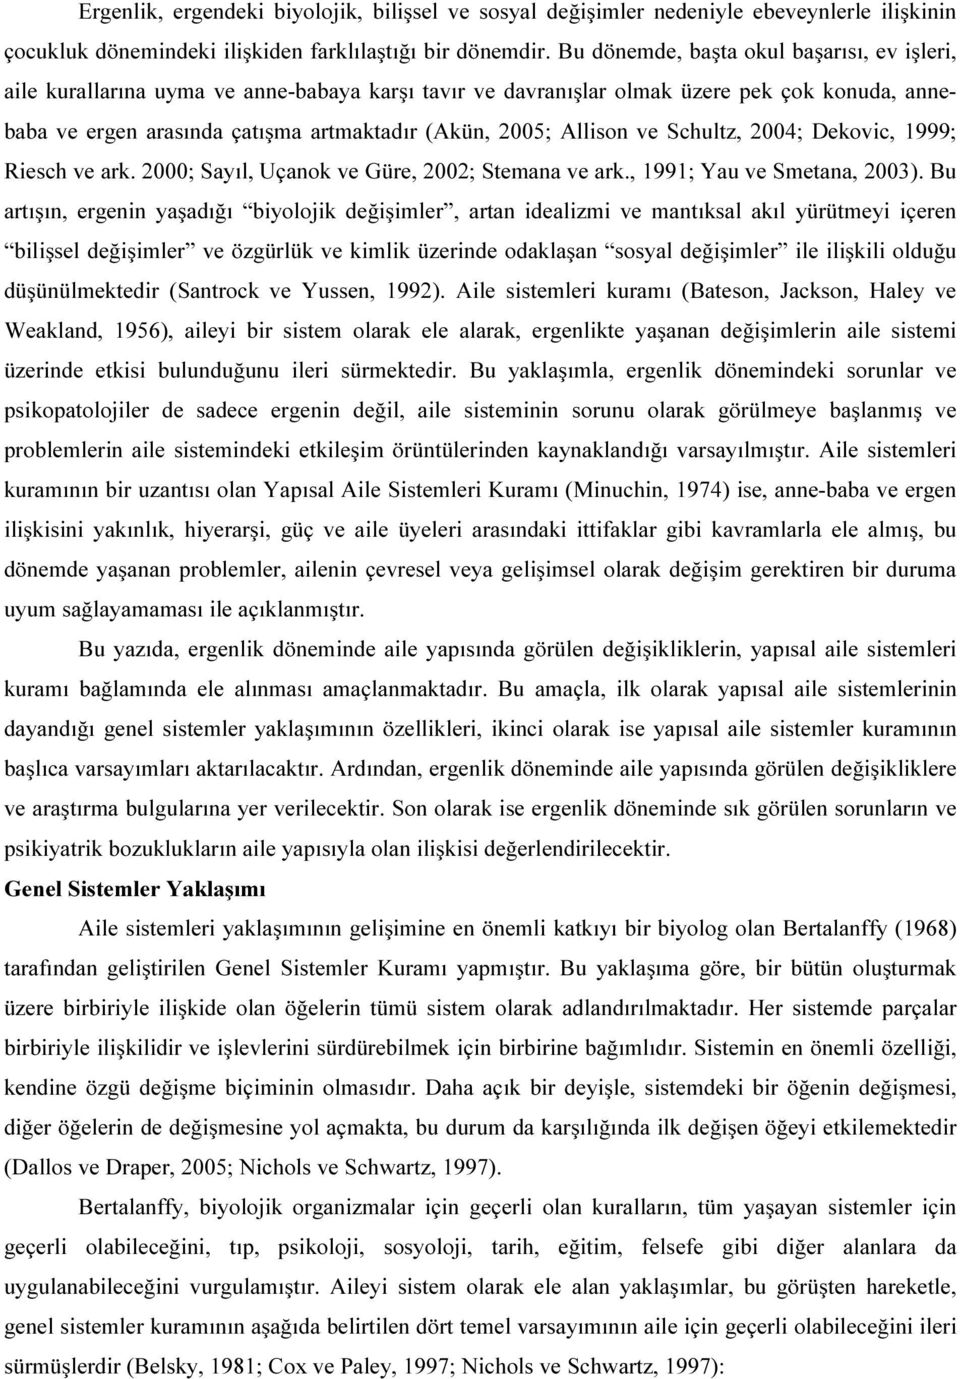 Allison ve Schultz, 2004; Dekovic, 1999; Riesch ve ark. 2000; Sayıl, Uçanok ve Güre, 2002; Stemana ve ark., 1991; Yau ve Smetana, 2003).